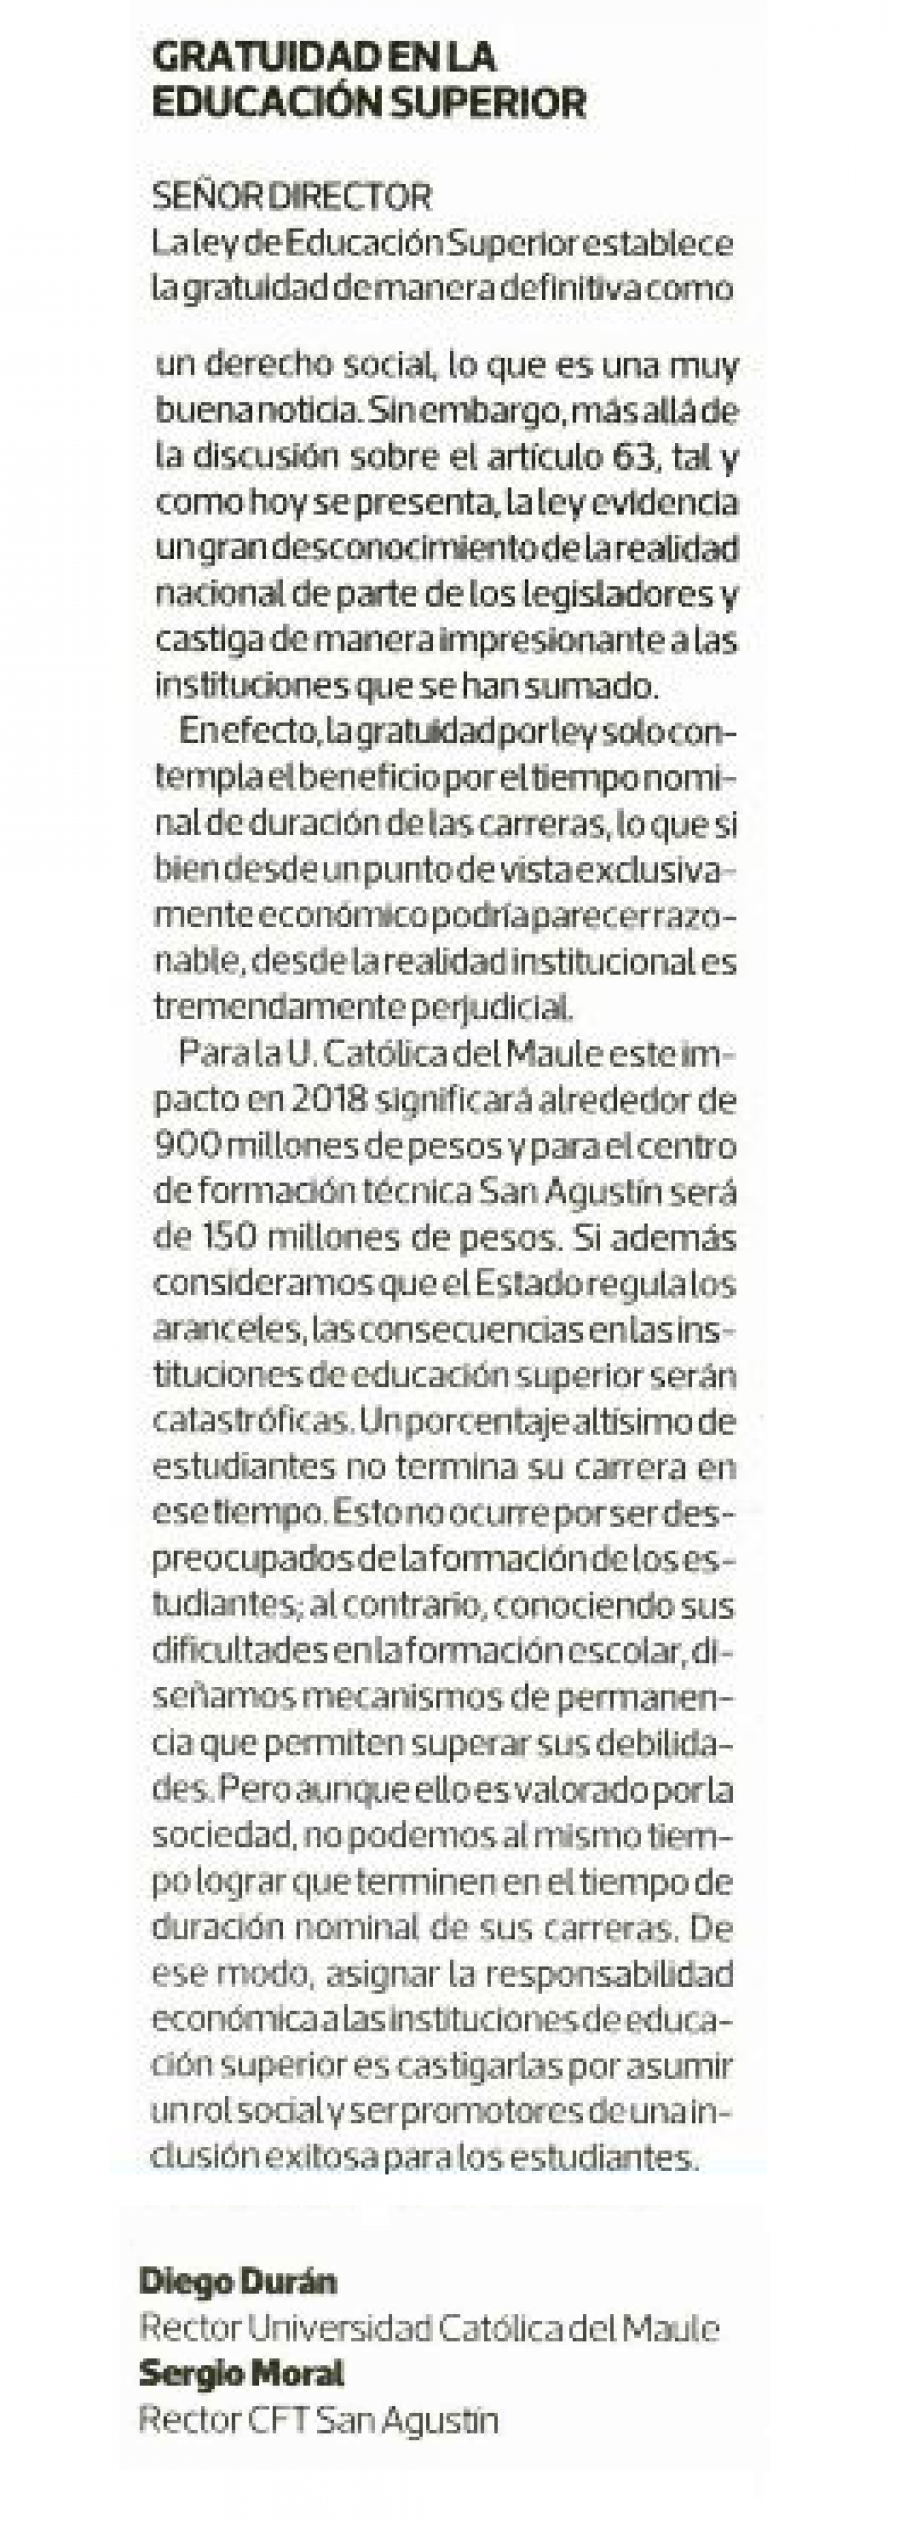 15 de abril en Diario La Tercera: “Gratuidad en la Educación Superior”